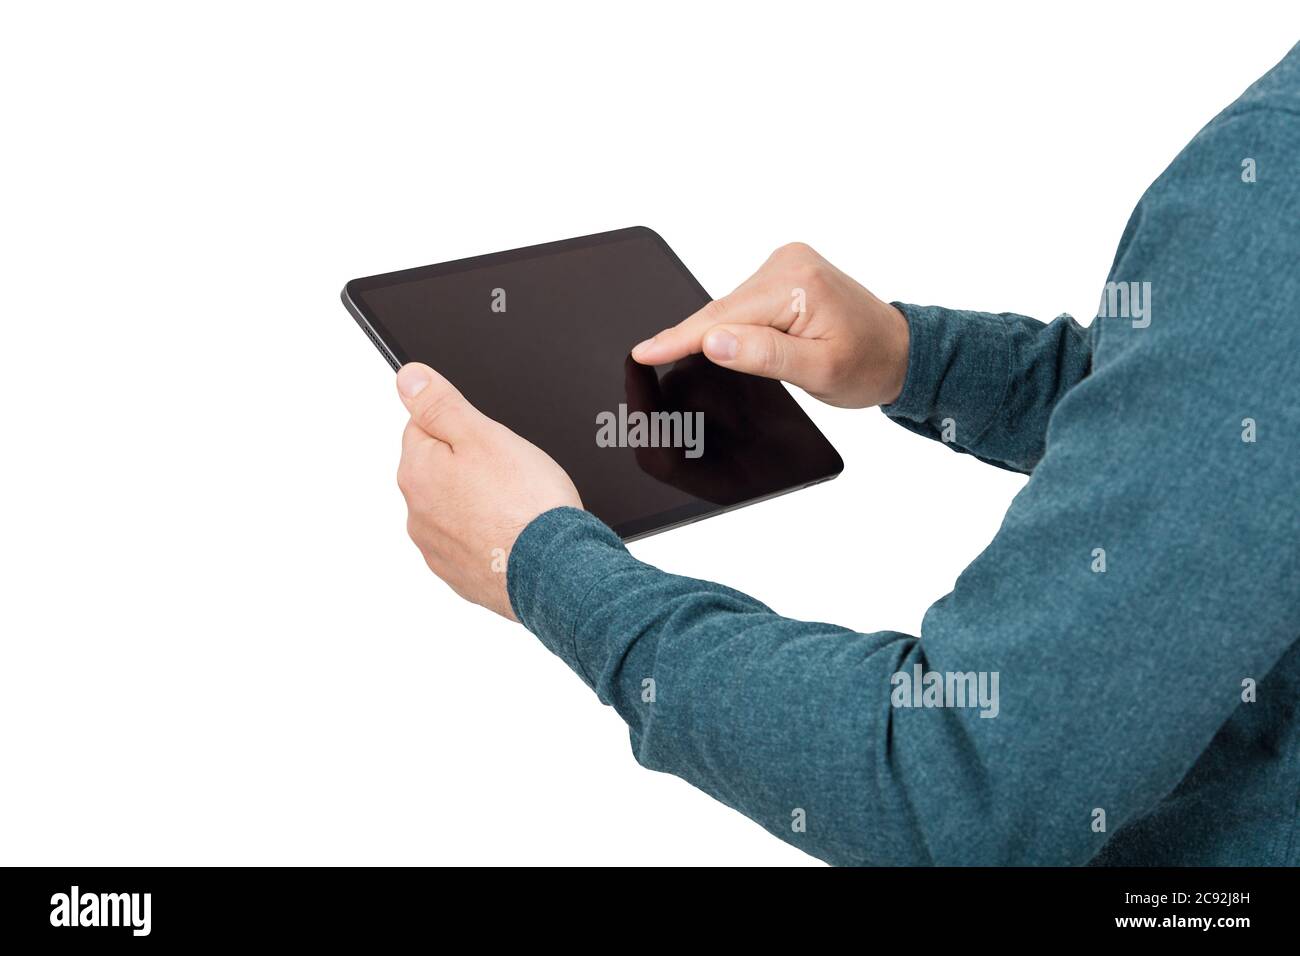 Avvicinati alle mani della persona utilizzando un tablet per PC premendo il display vuoto del gadget isolato su sfondo bianco con spazio per la copia. Tecnologia moderna e istruzione Foto Stock